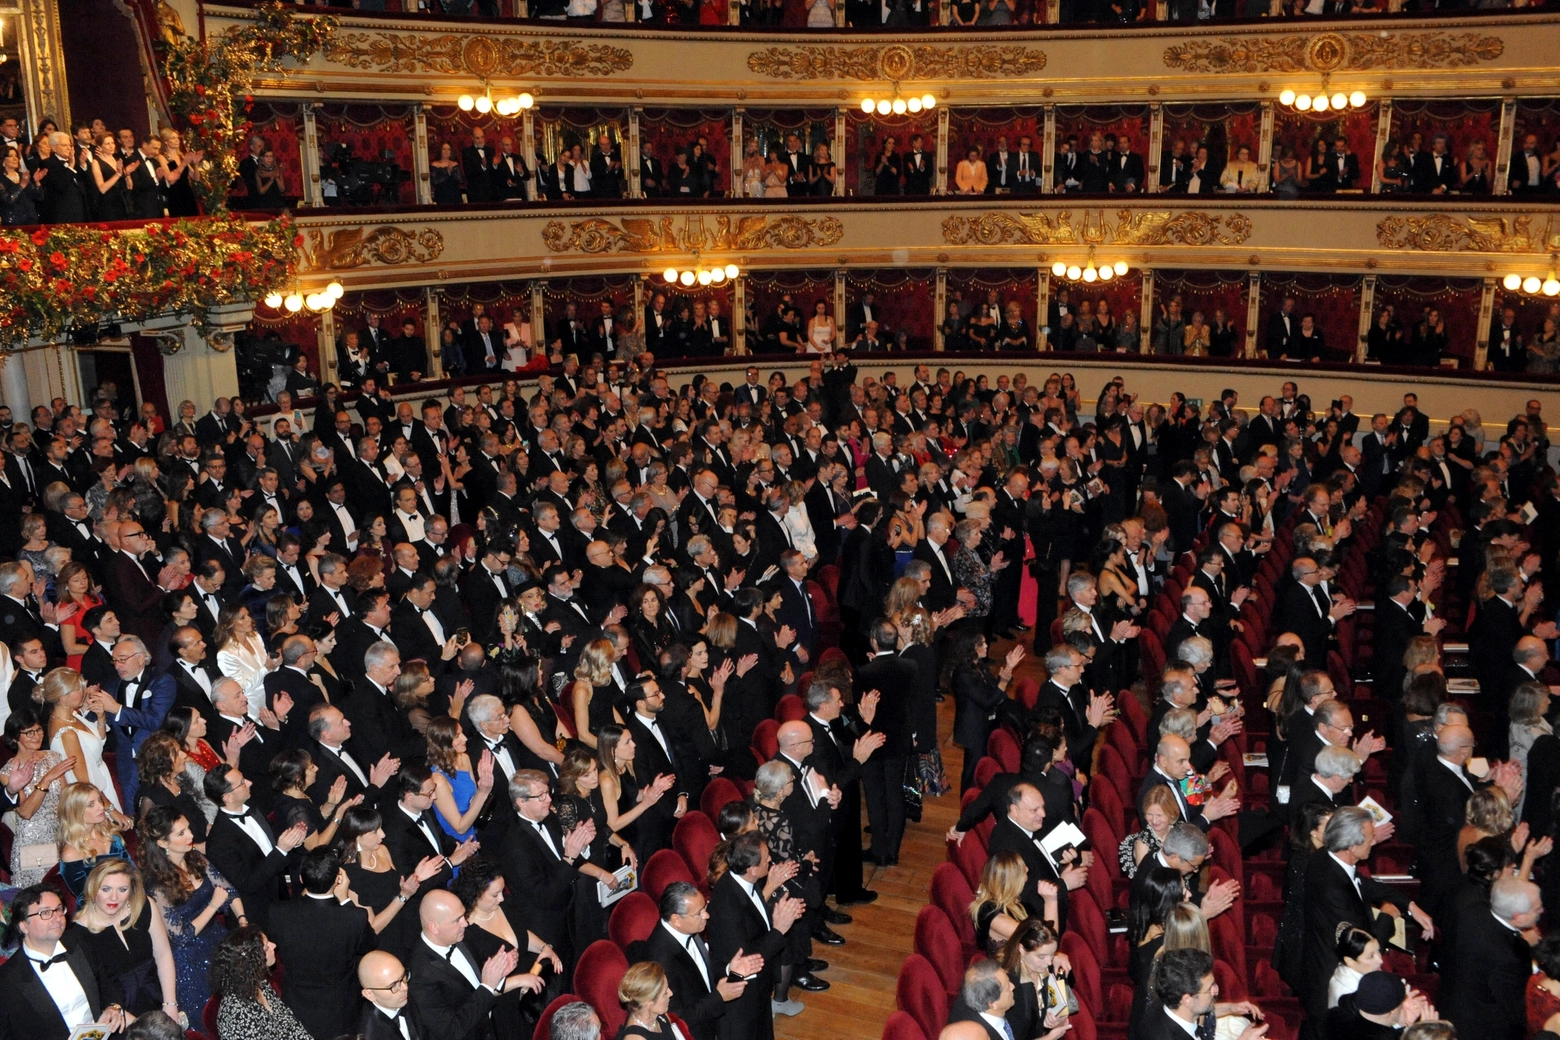 La platea del teatro alla Scala durante una prima (Archivio)